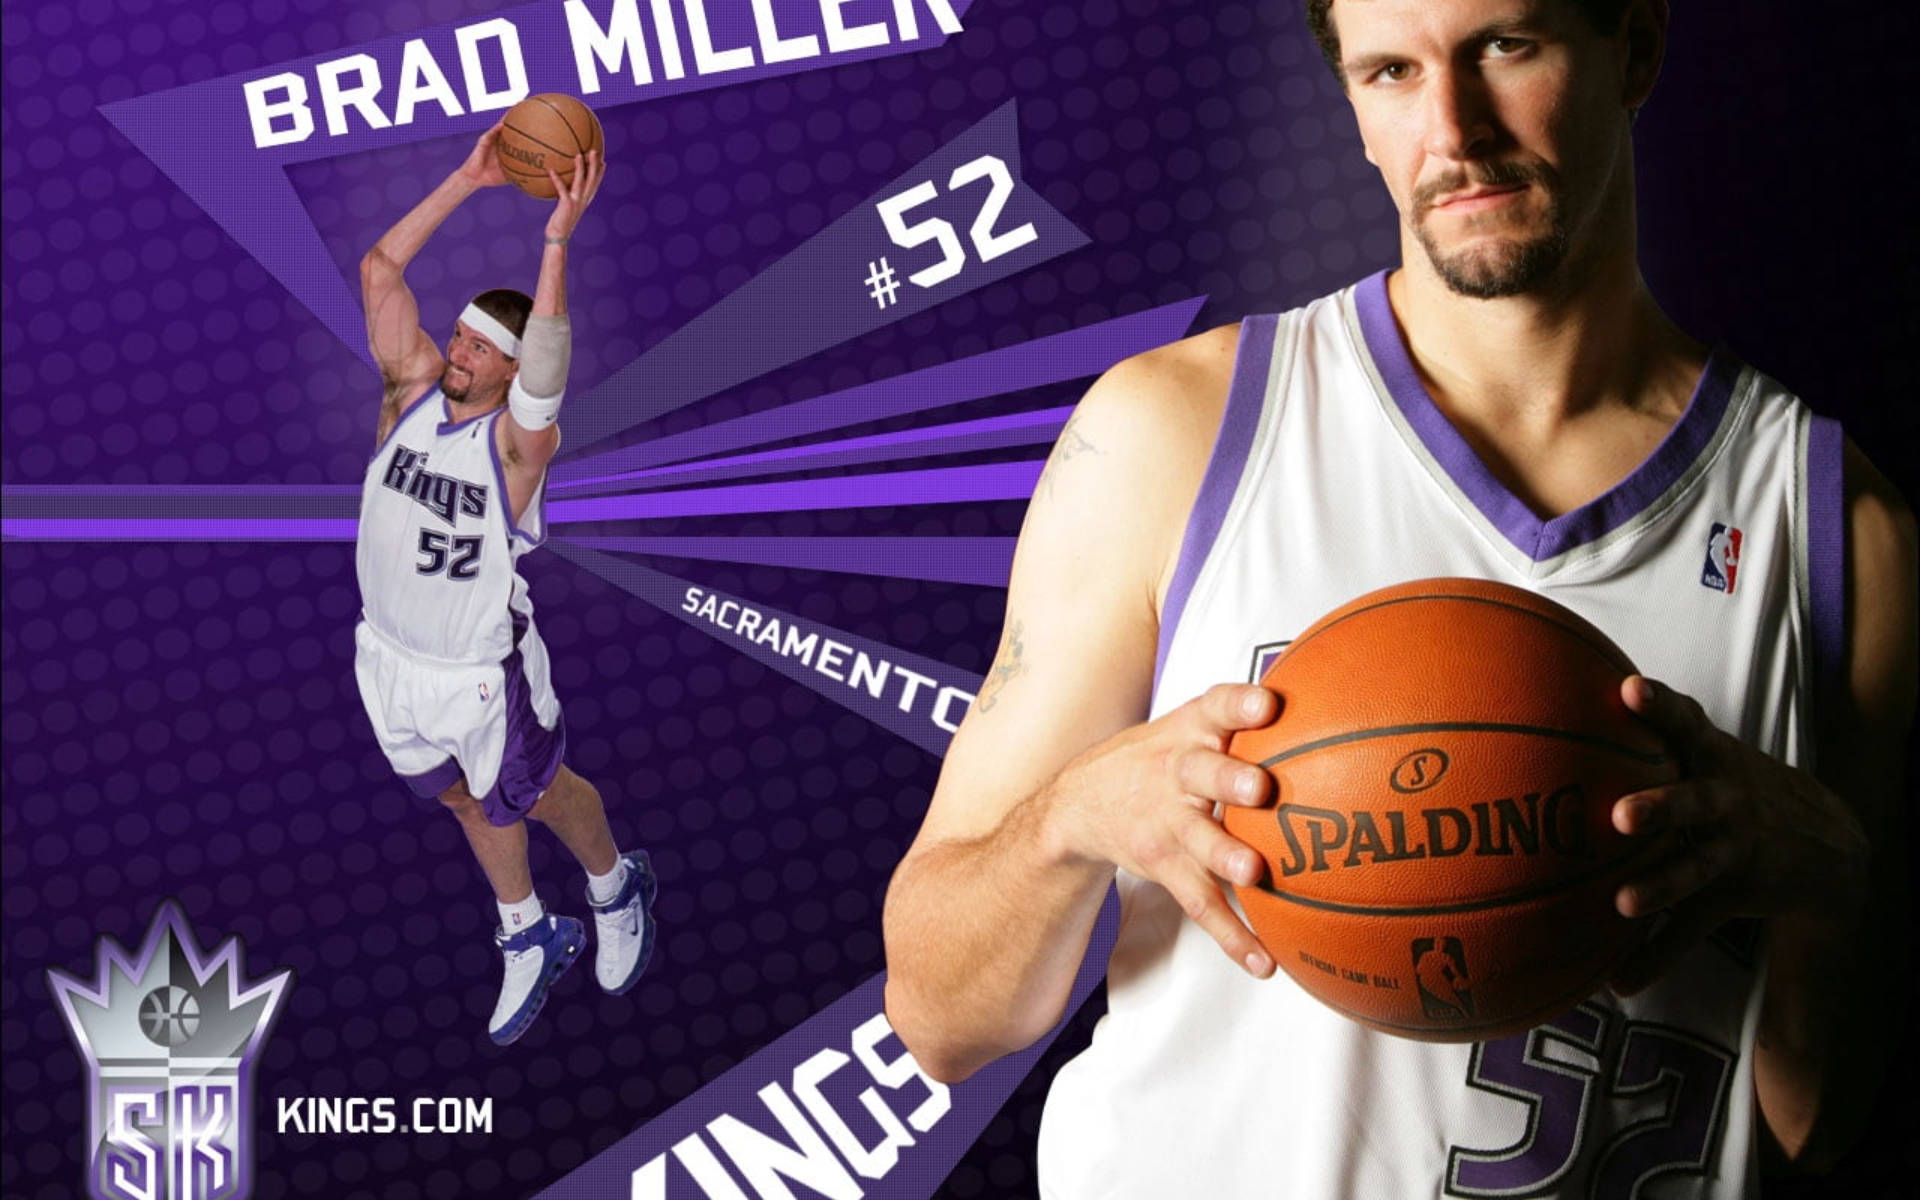 Capadigital Dos Sacramento Kings Com Brad Miller. Papel de Parede